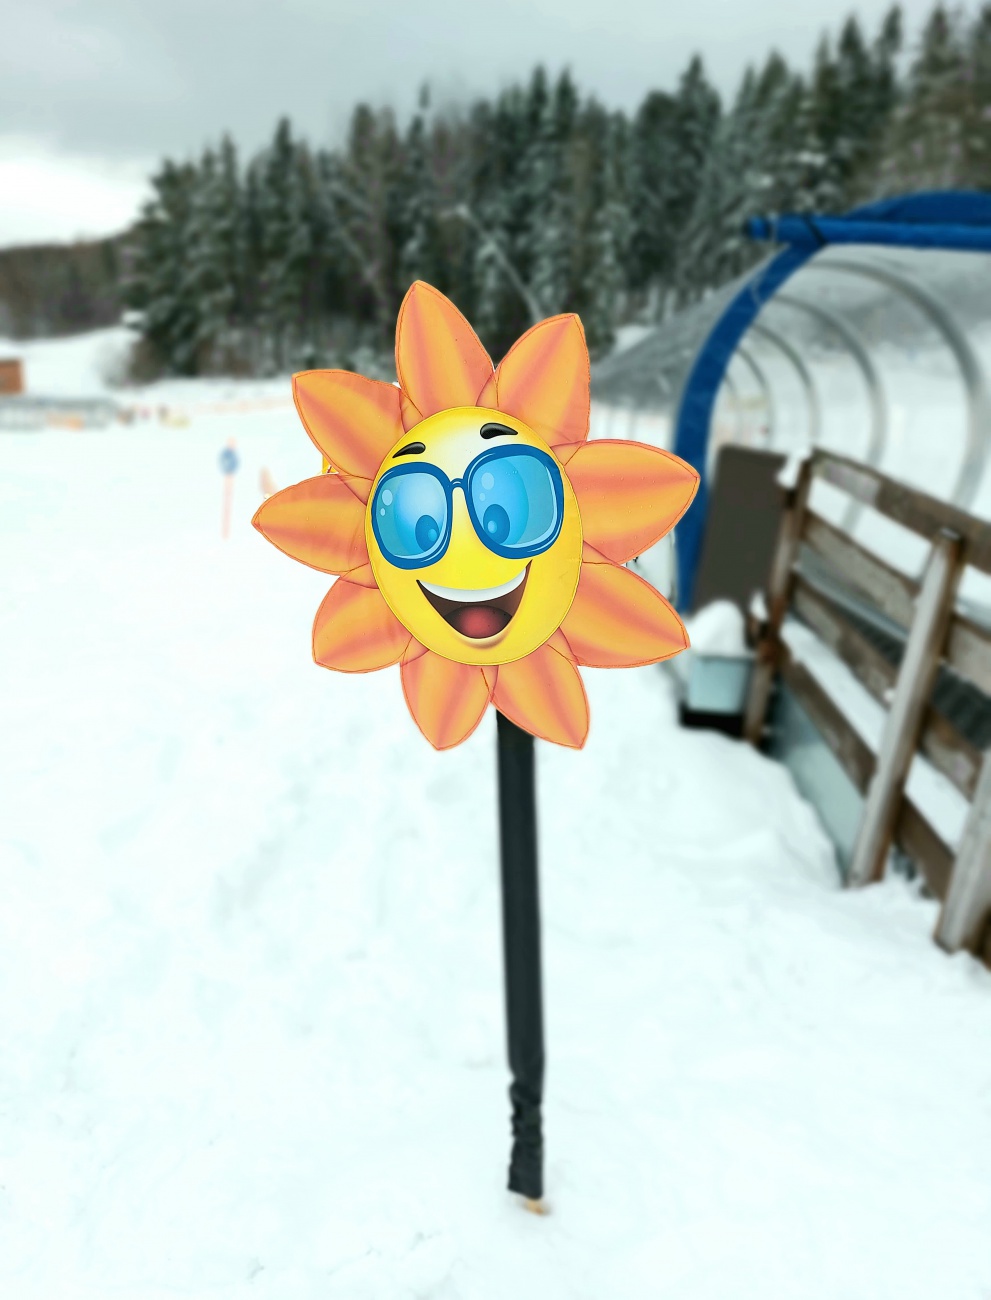 Foto: Martin Zehrer - Eine Blume am Kinderbereich vom Ski-Lift in Mehlmeisel 